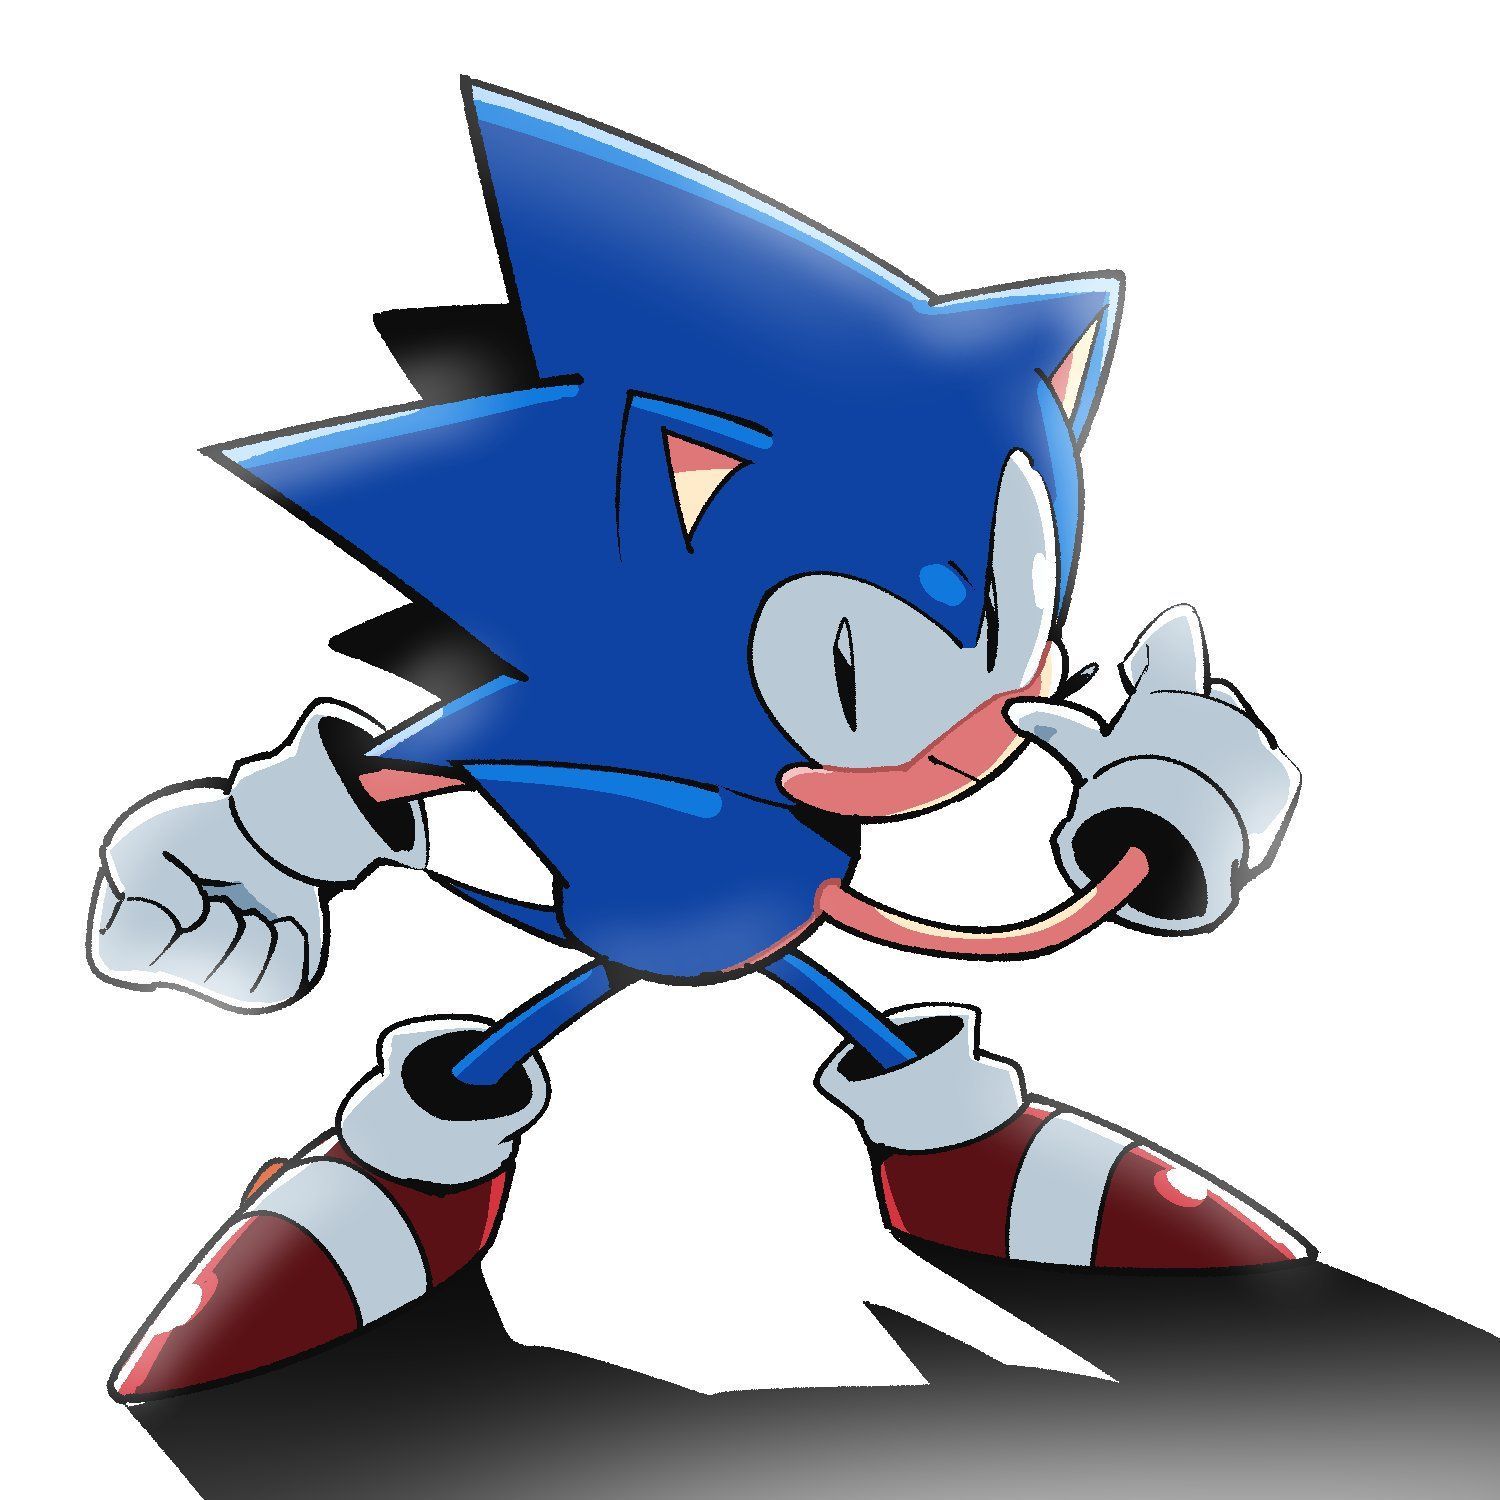 A Evolução do Design do Sonic: Do Pixel ao Papel